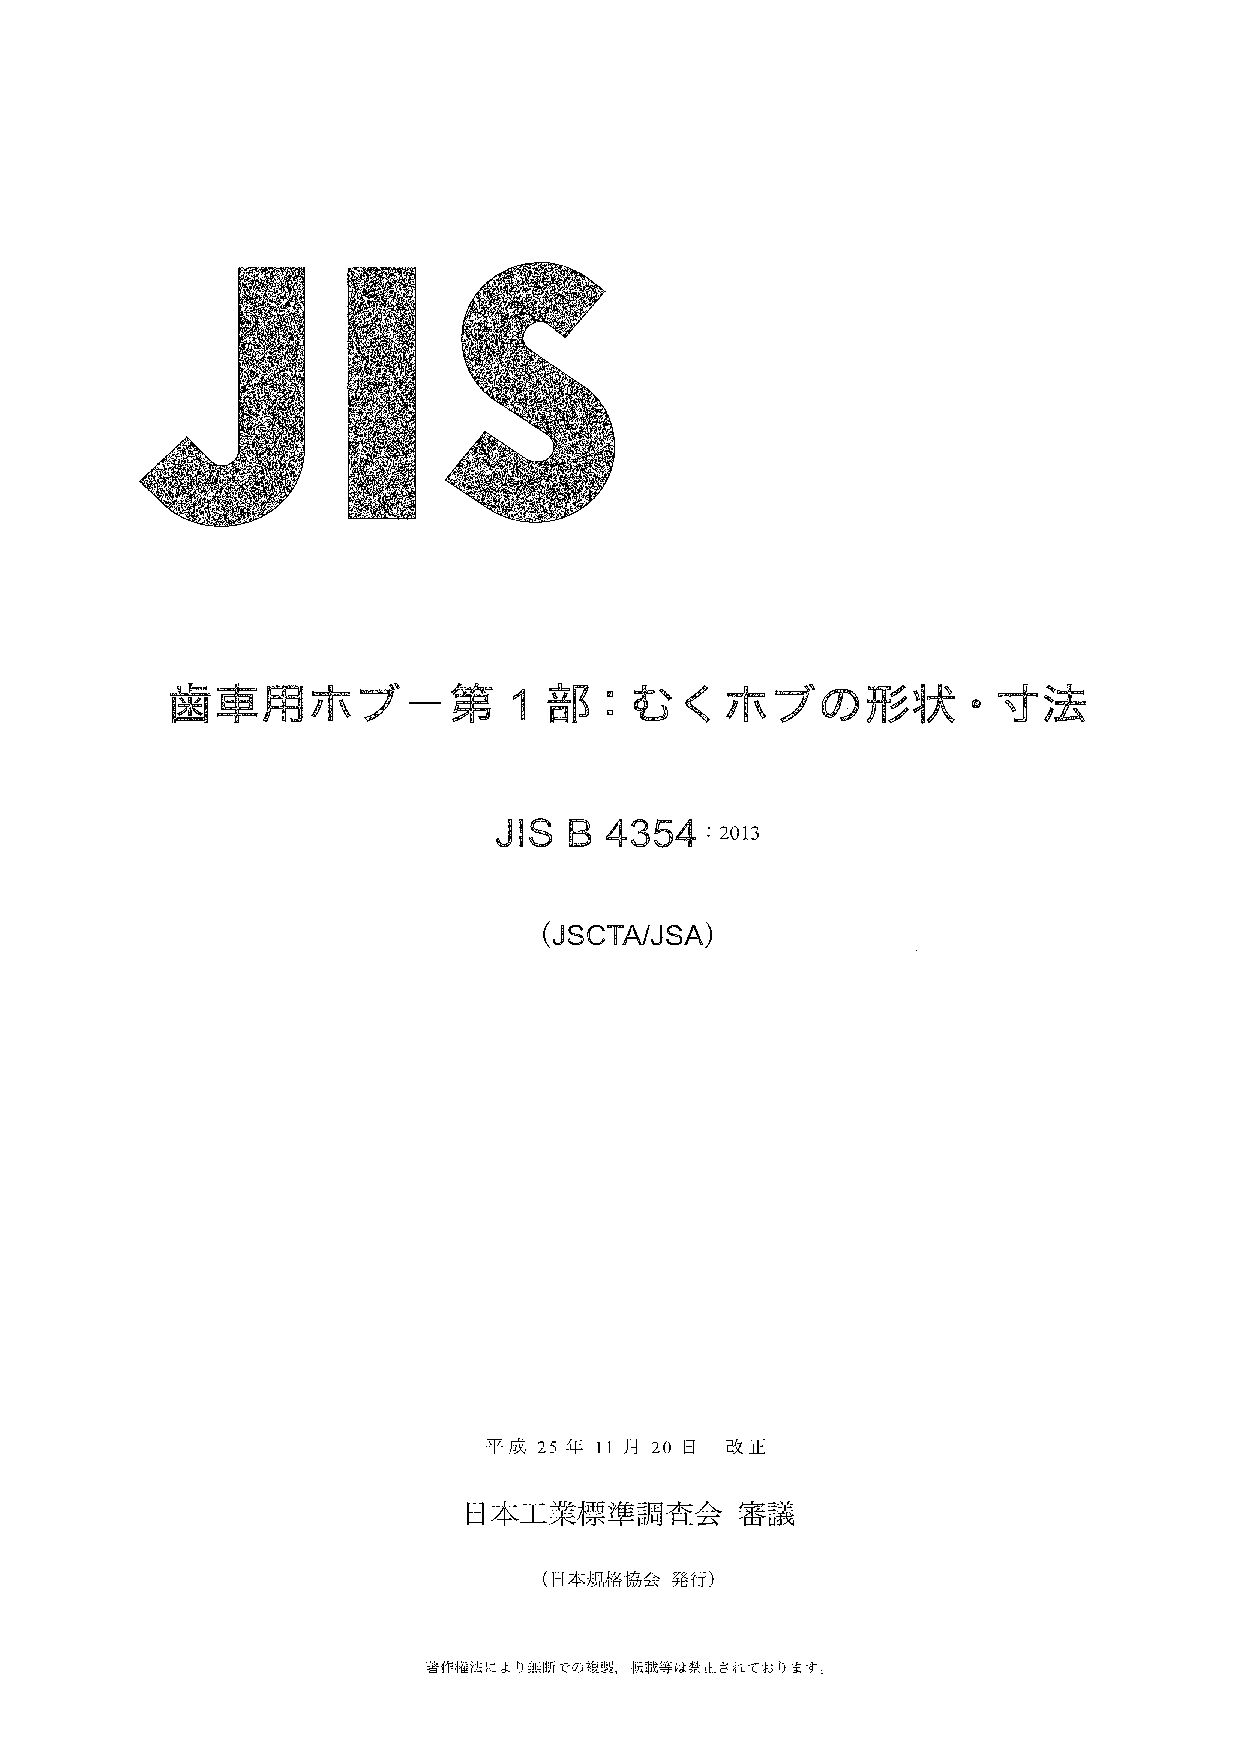 JIS B 4354:2013封面图